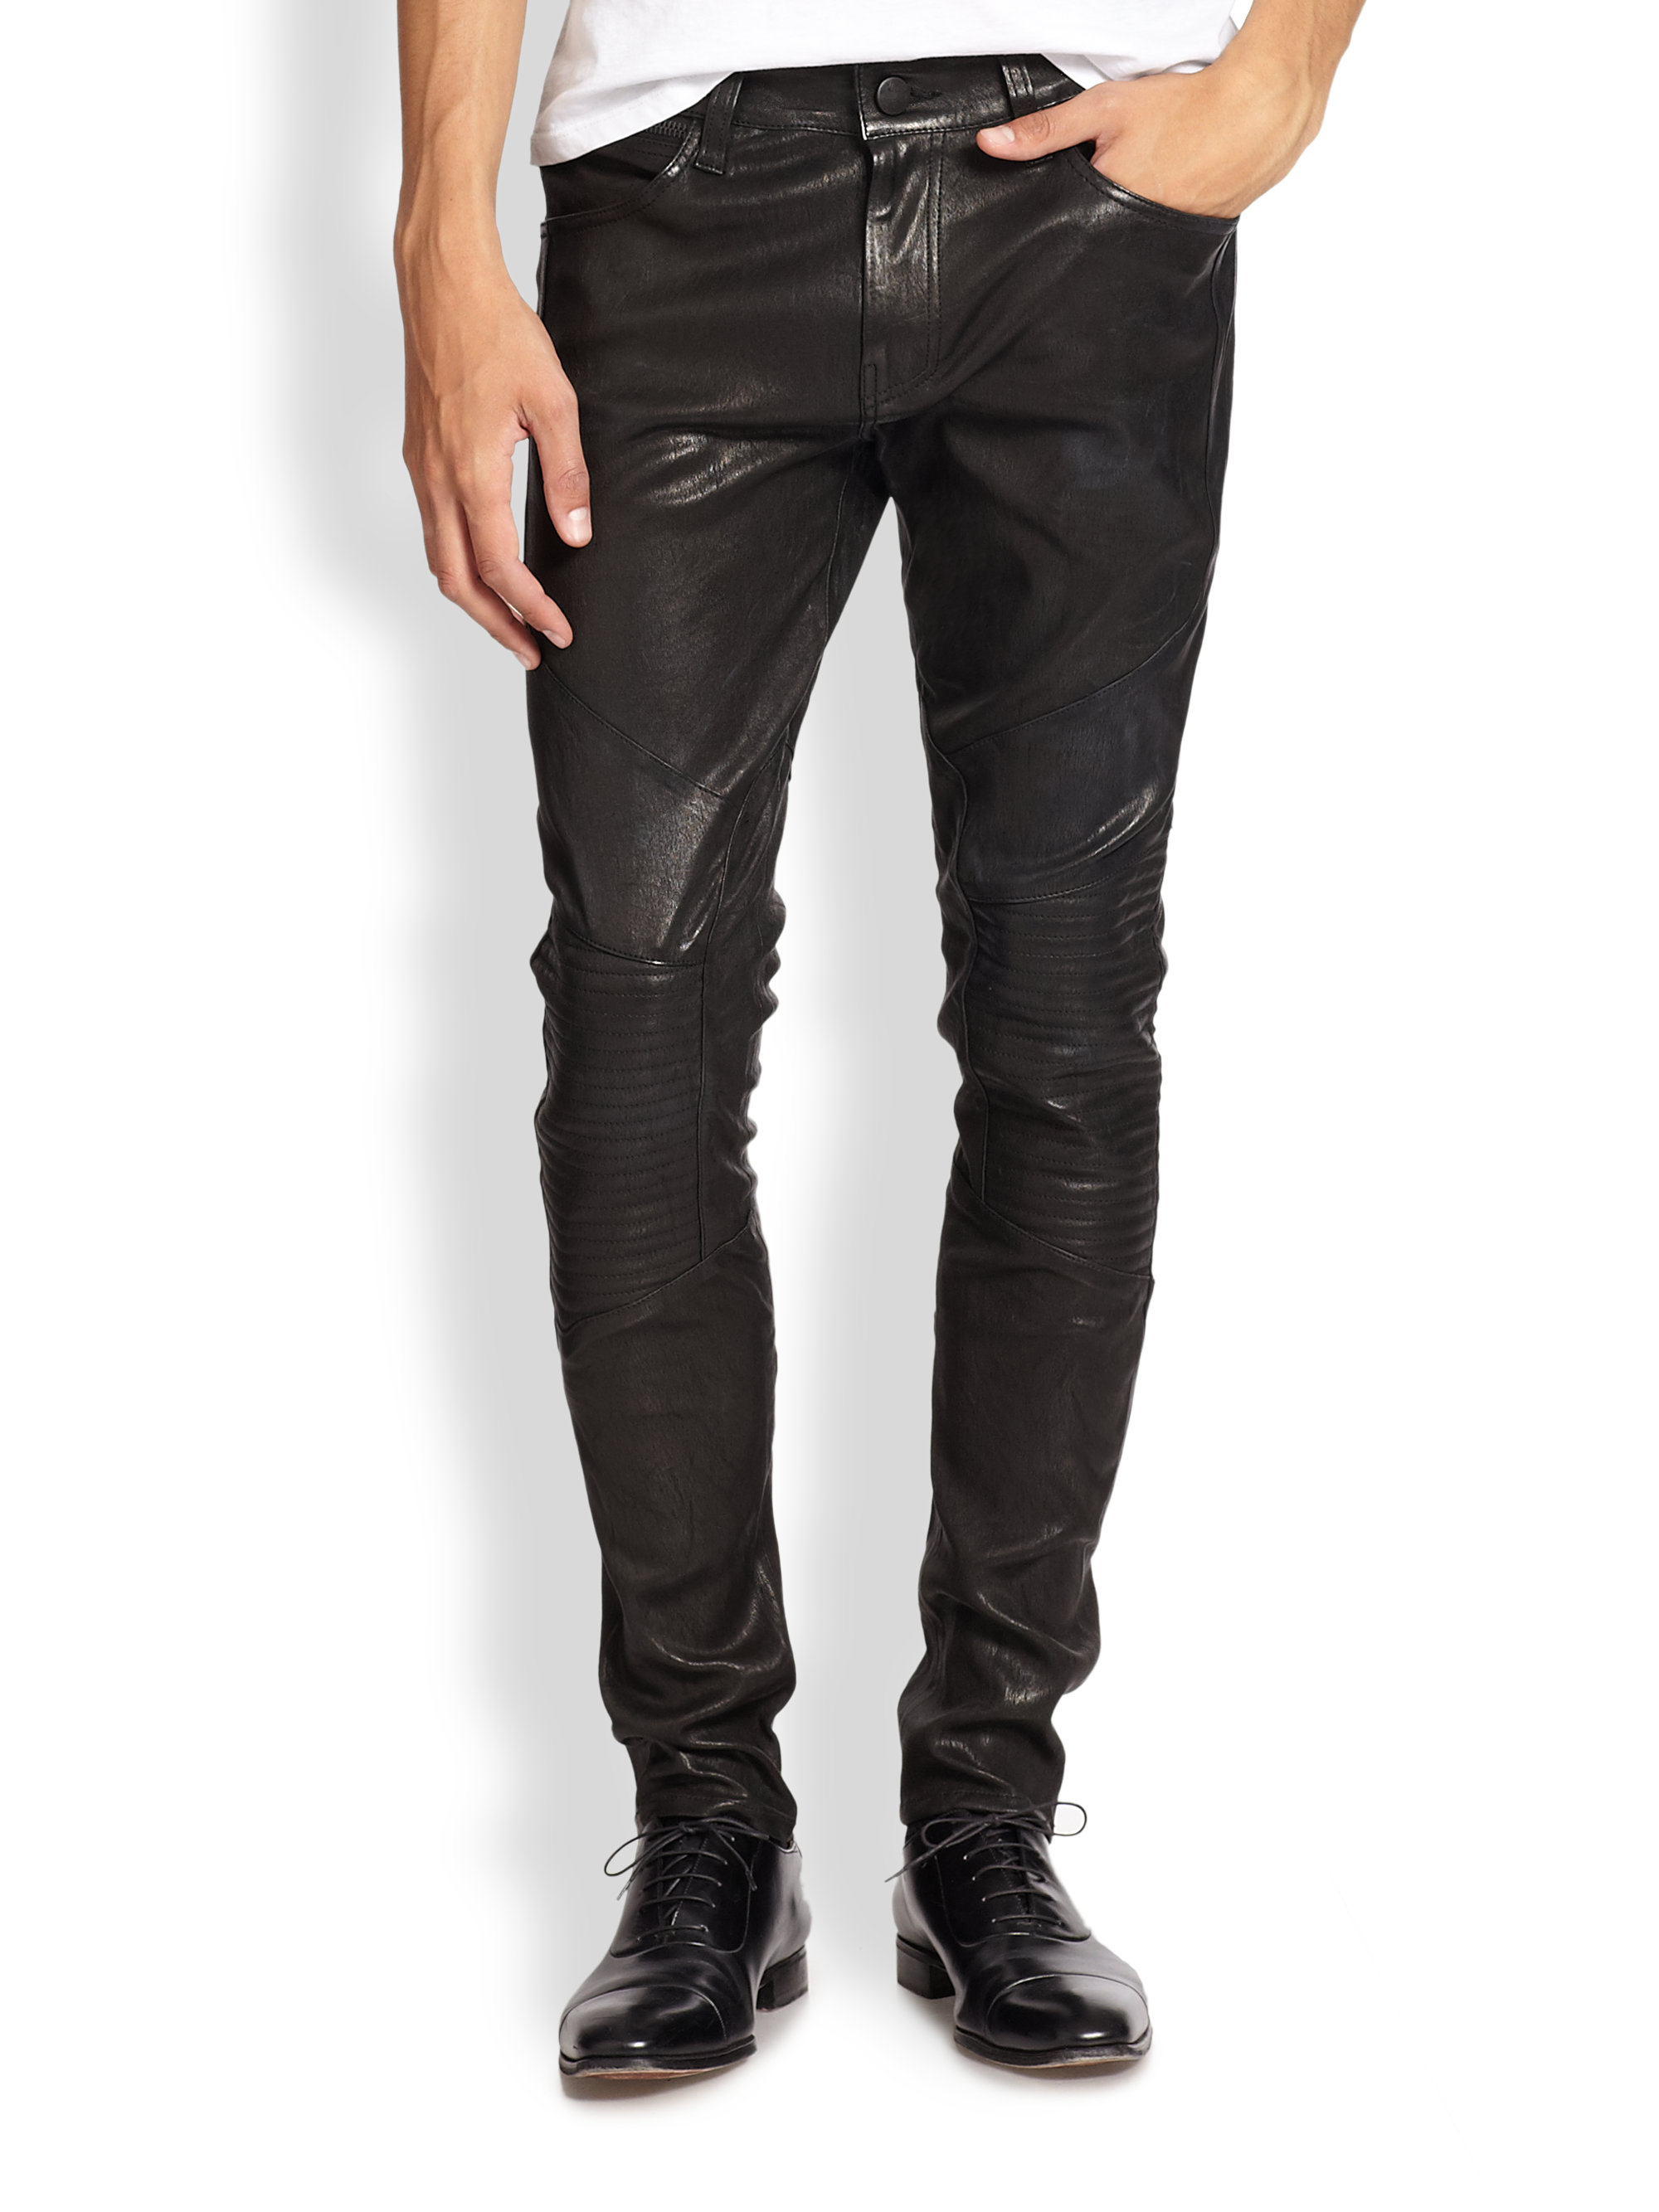 Lyst - J Brand Bearden Leather Moto Pants in Black for Men